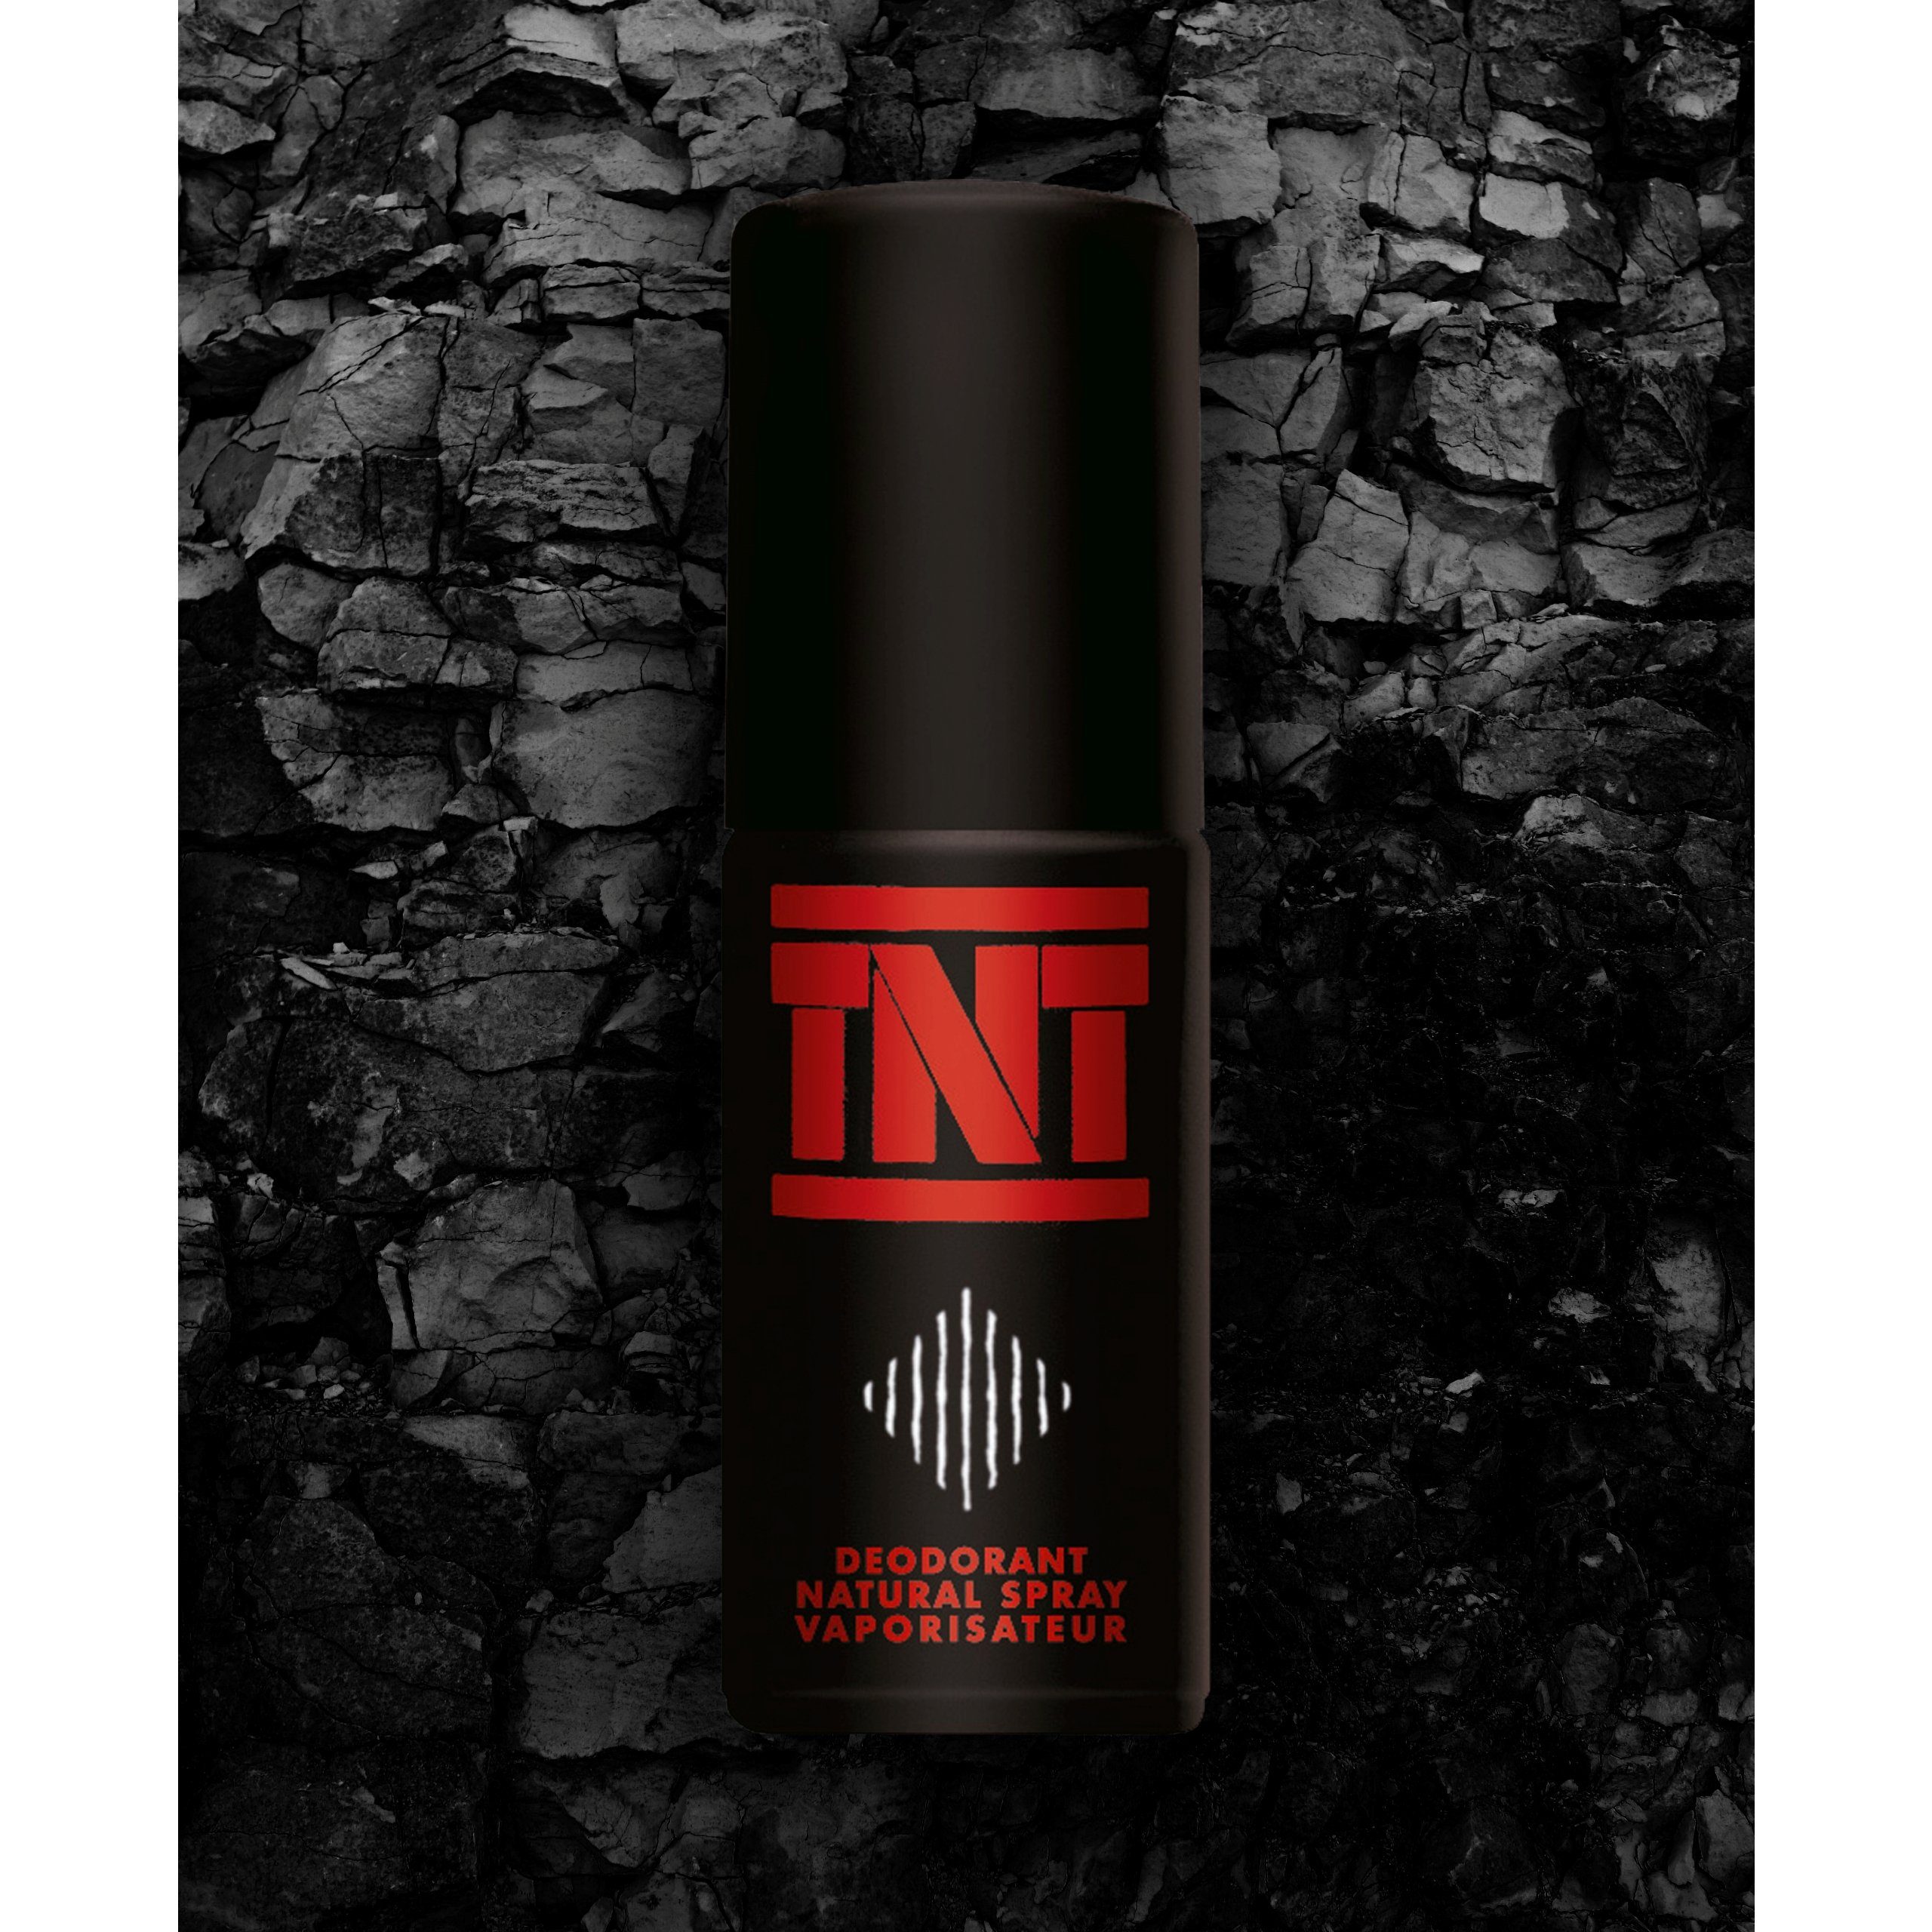 x Spray TNT Duft-Set Vorteilspack 100 2 Natural Deo TNT ml